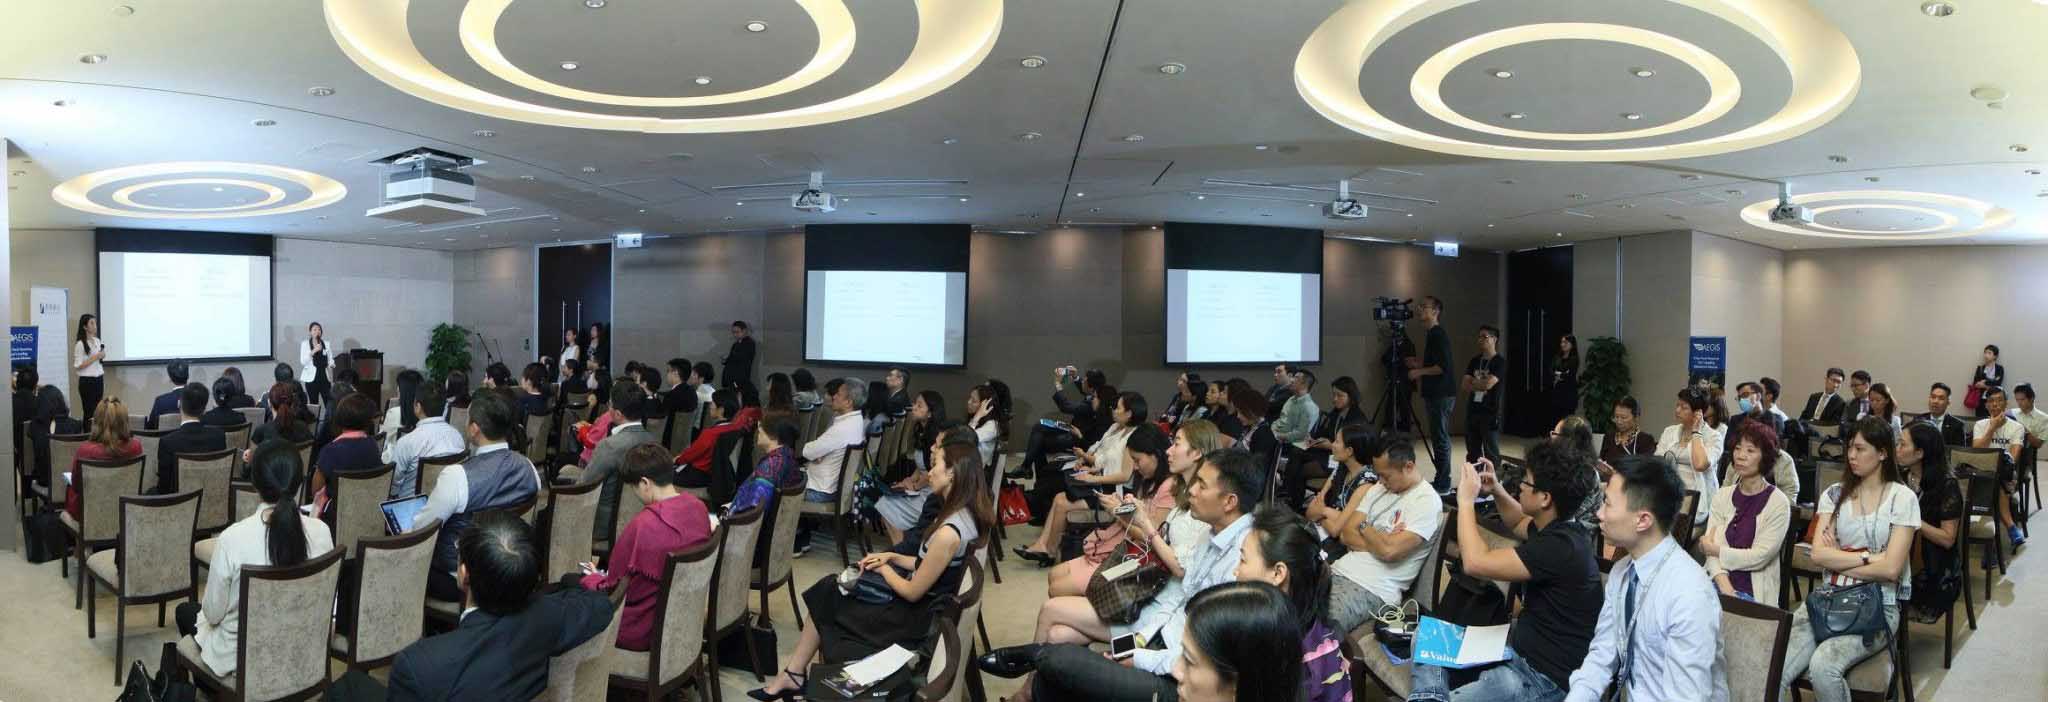 U.S. and U.K. Admissions Seminar with AIA Hong Kong